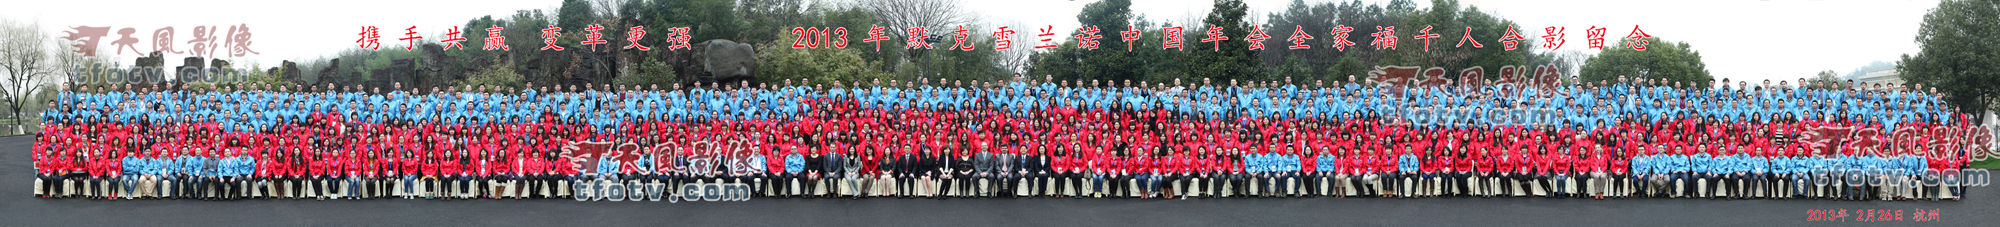 默克雪兰诺2013年集体照全家福合影2013杭州天风影像千人合影拍摄